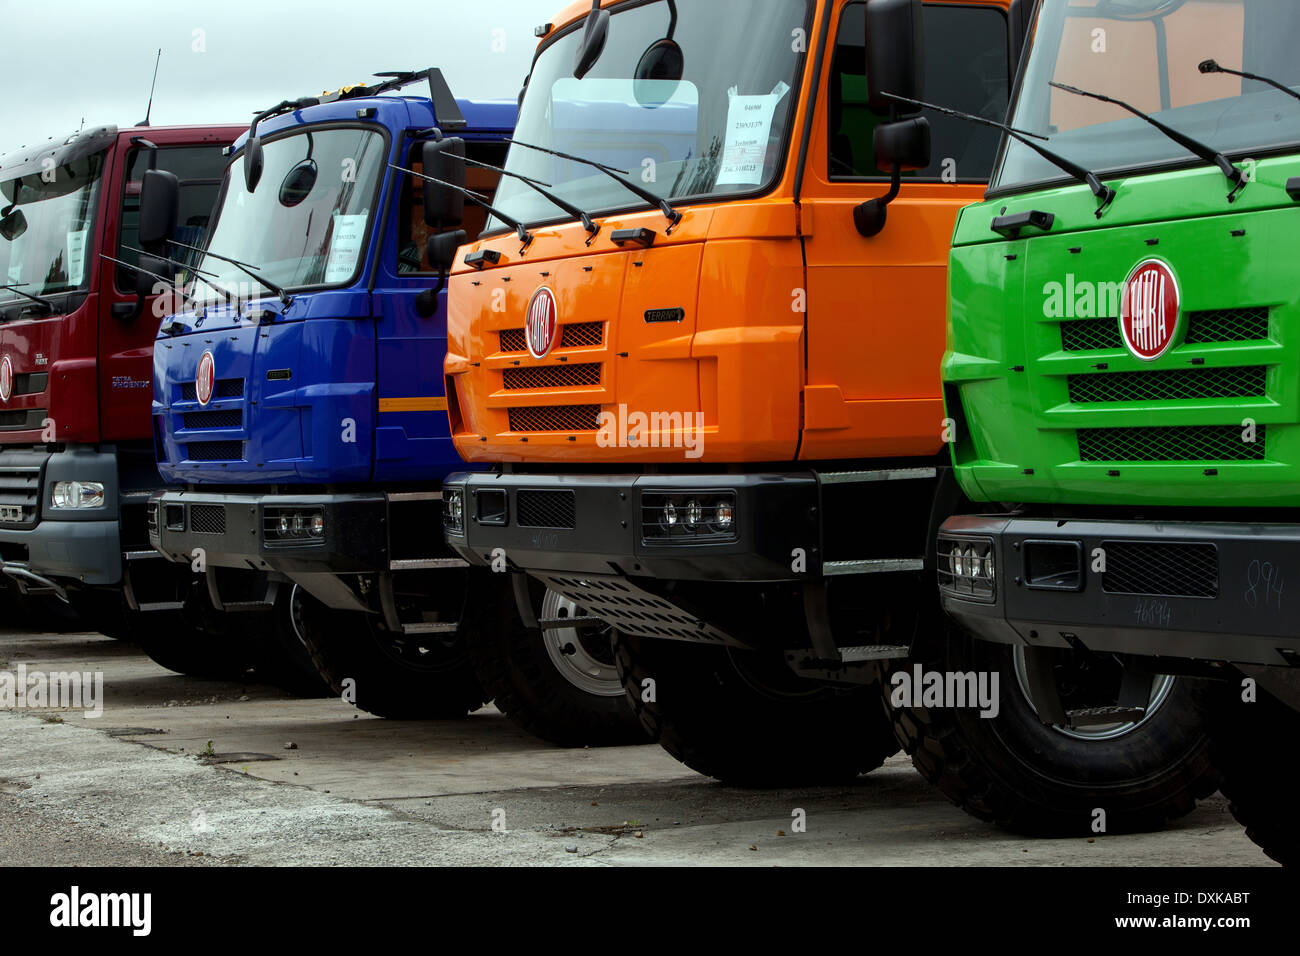 Tatra Trucks, Koprivnice Tschechische Republik Automobilindustrie, stellte geparkte Lastwagen her Stockfoto